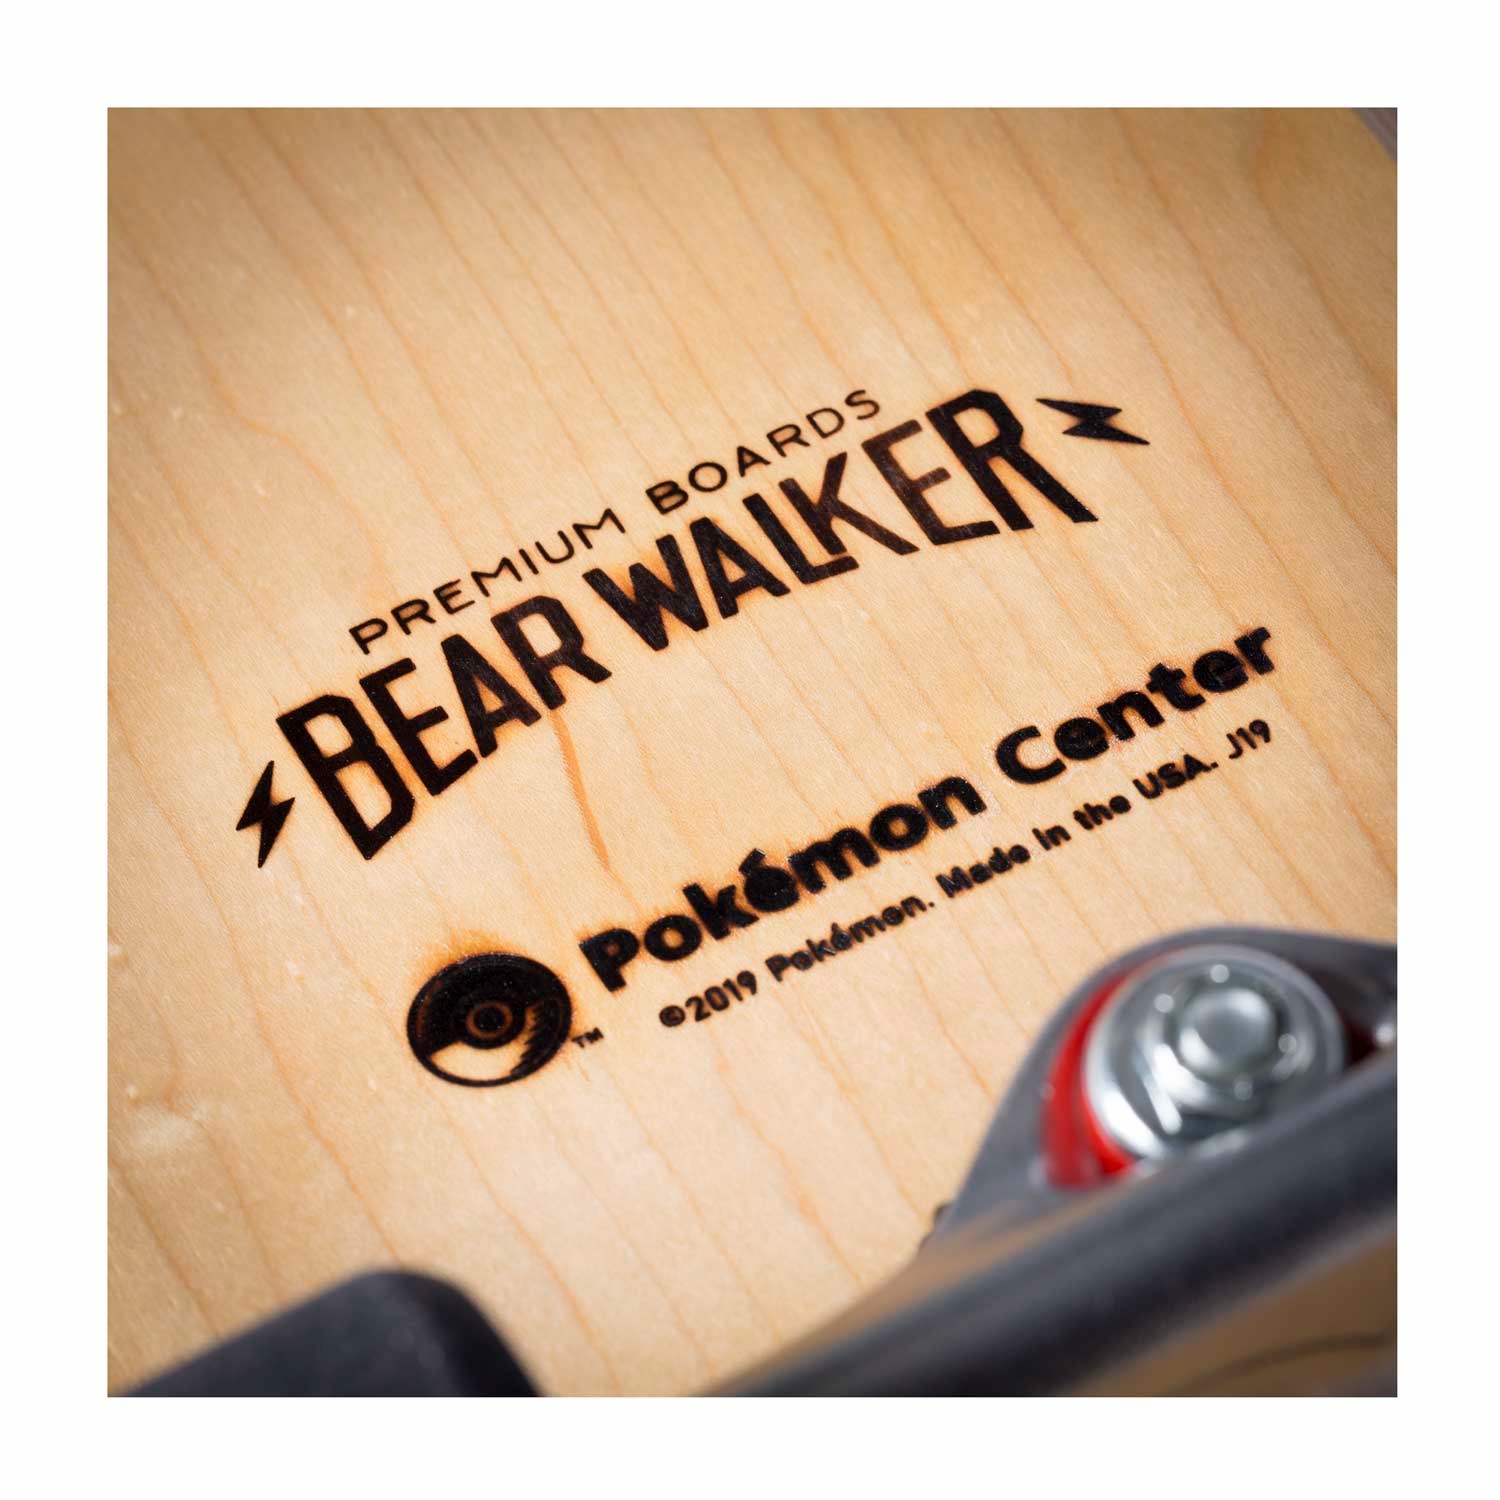 Pokemon_Center_x_Bear_Walker_Skateboard_Imprint.jpg